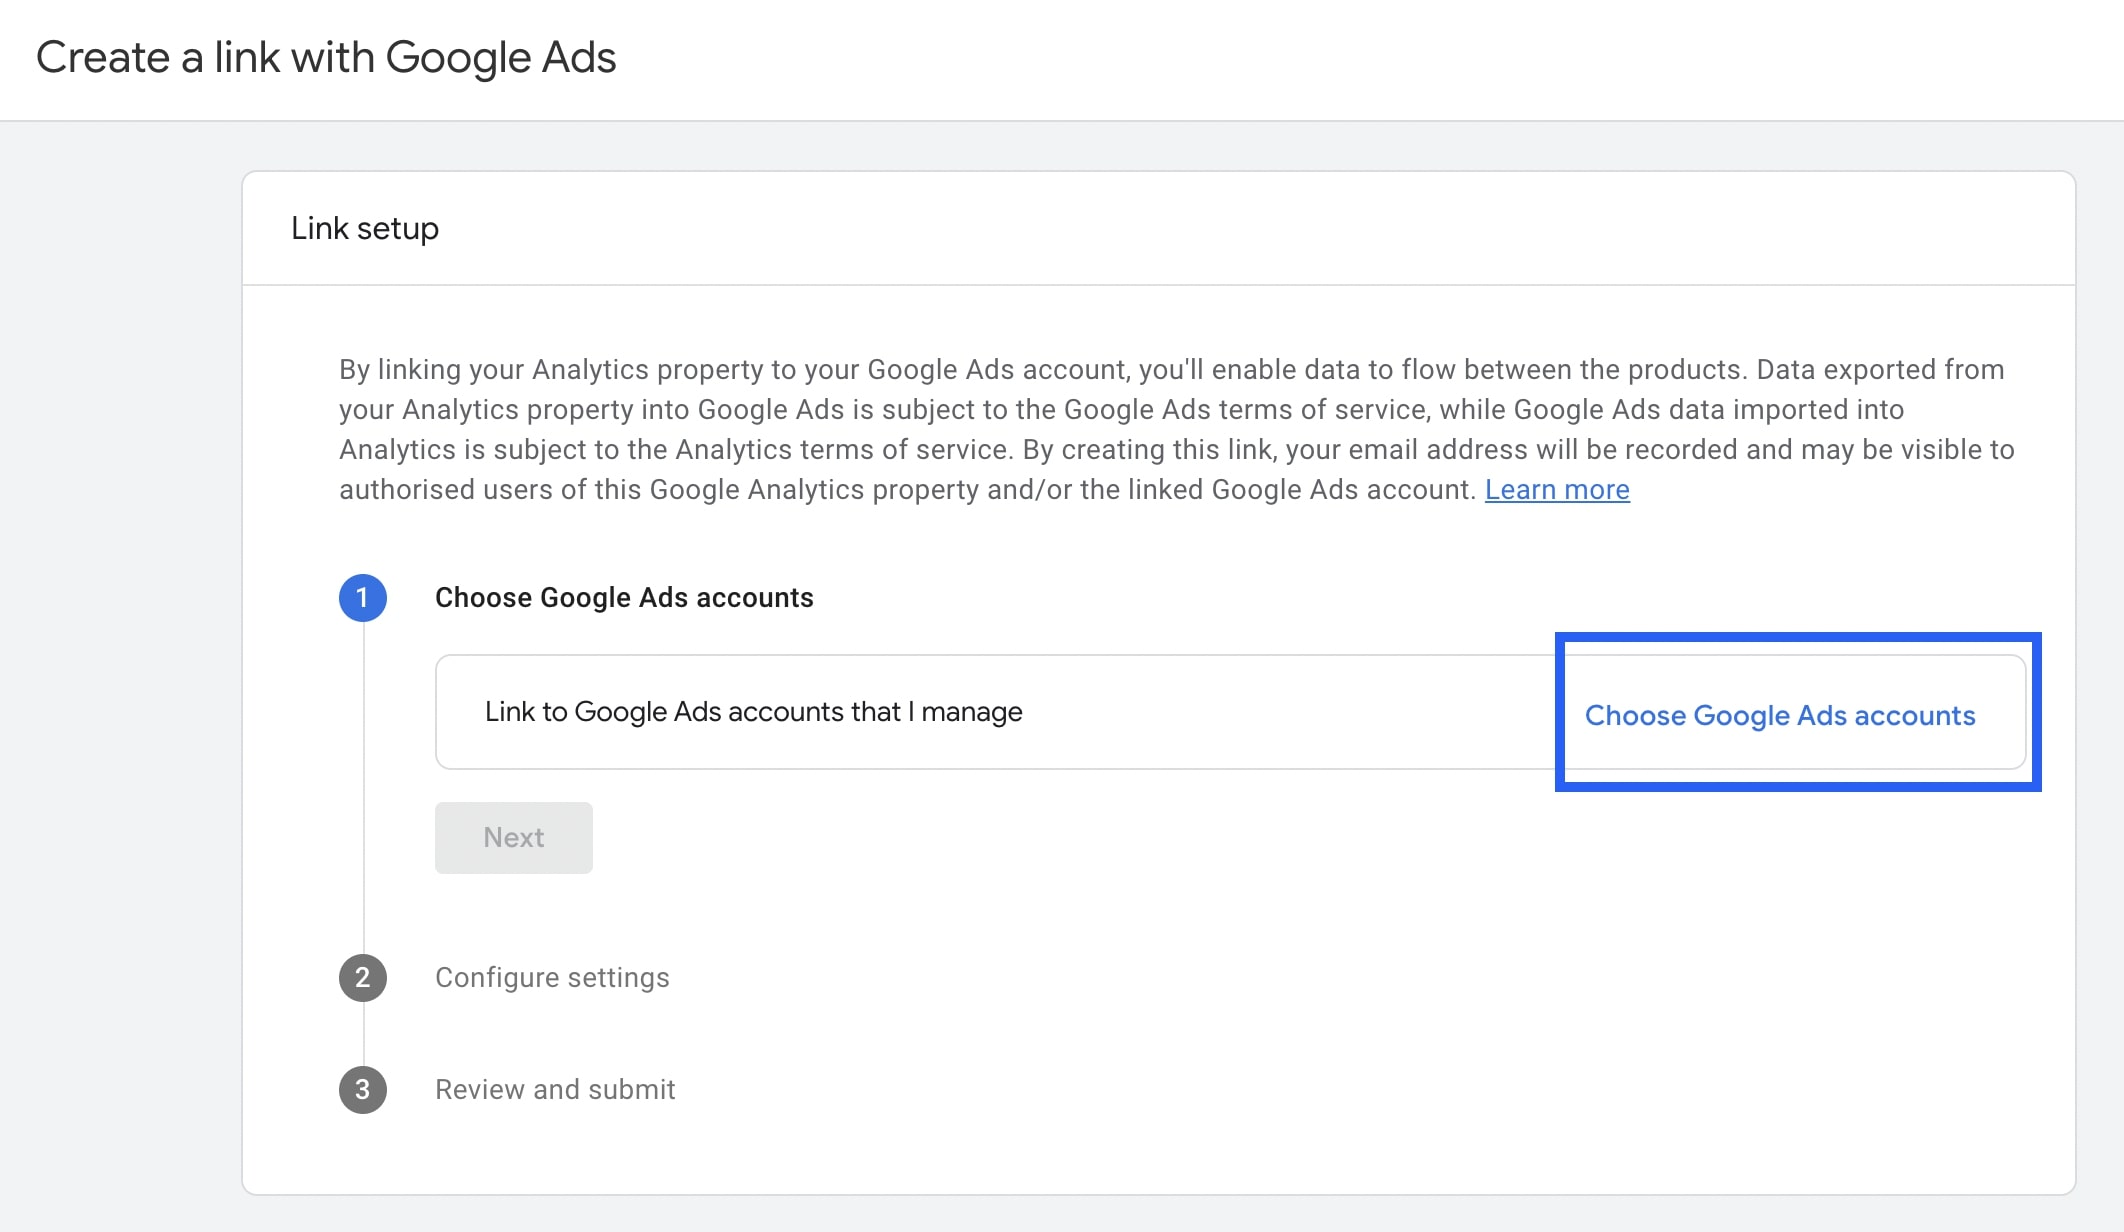 Choose Google Ads accounts